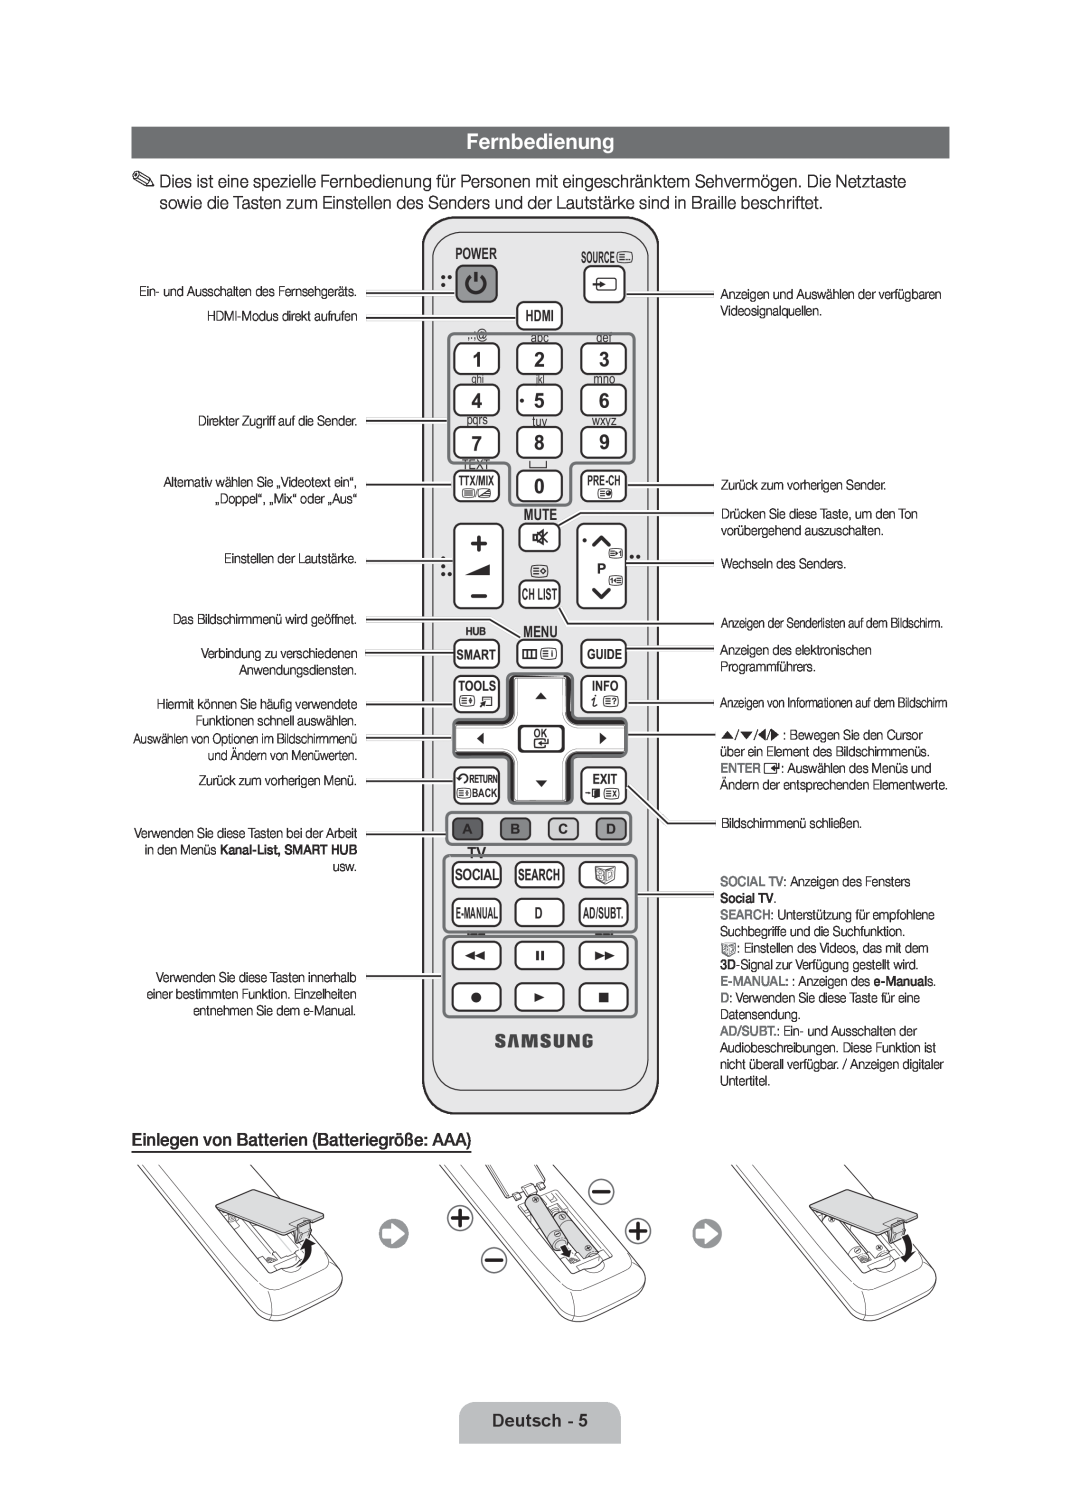 Samsung UE46D6000TPXZT, UE55D6000TPXZT manual Fernbedienung, Deutsch, Source, Menu, Tv Social E-Manual D, Ad/Subt, Ch List 